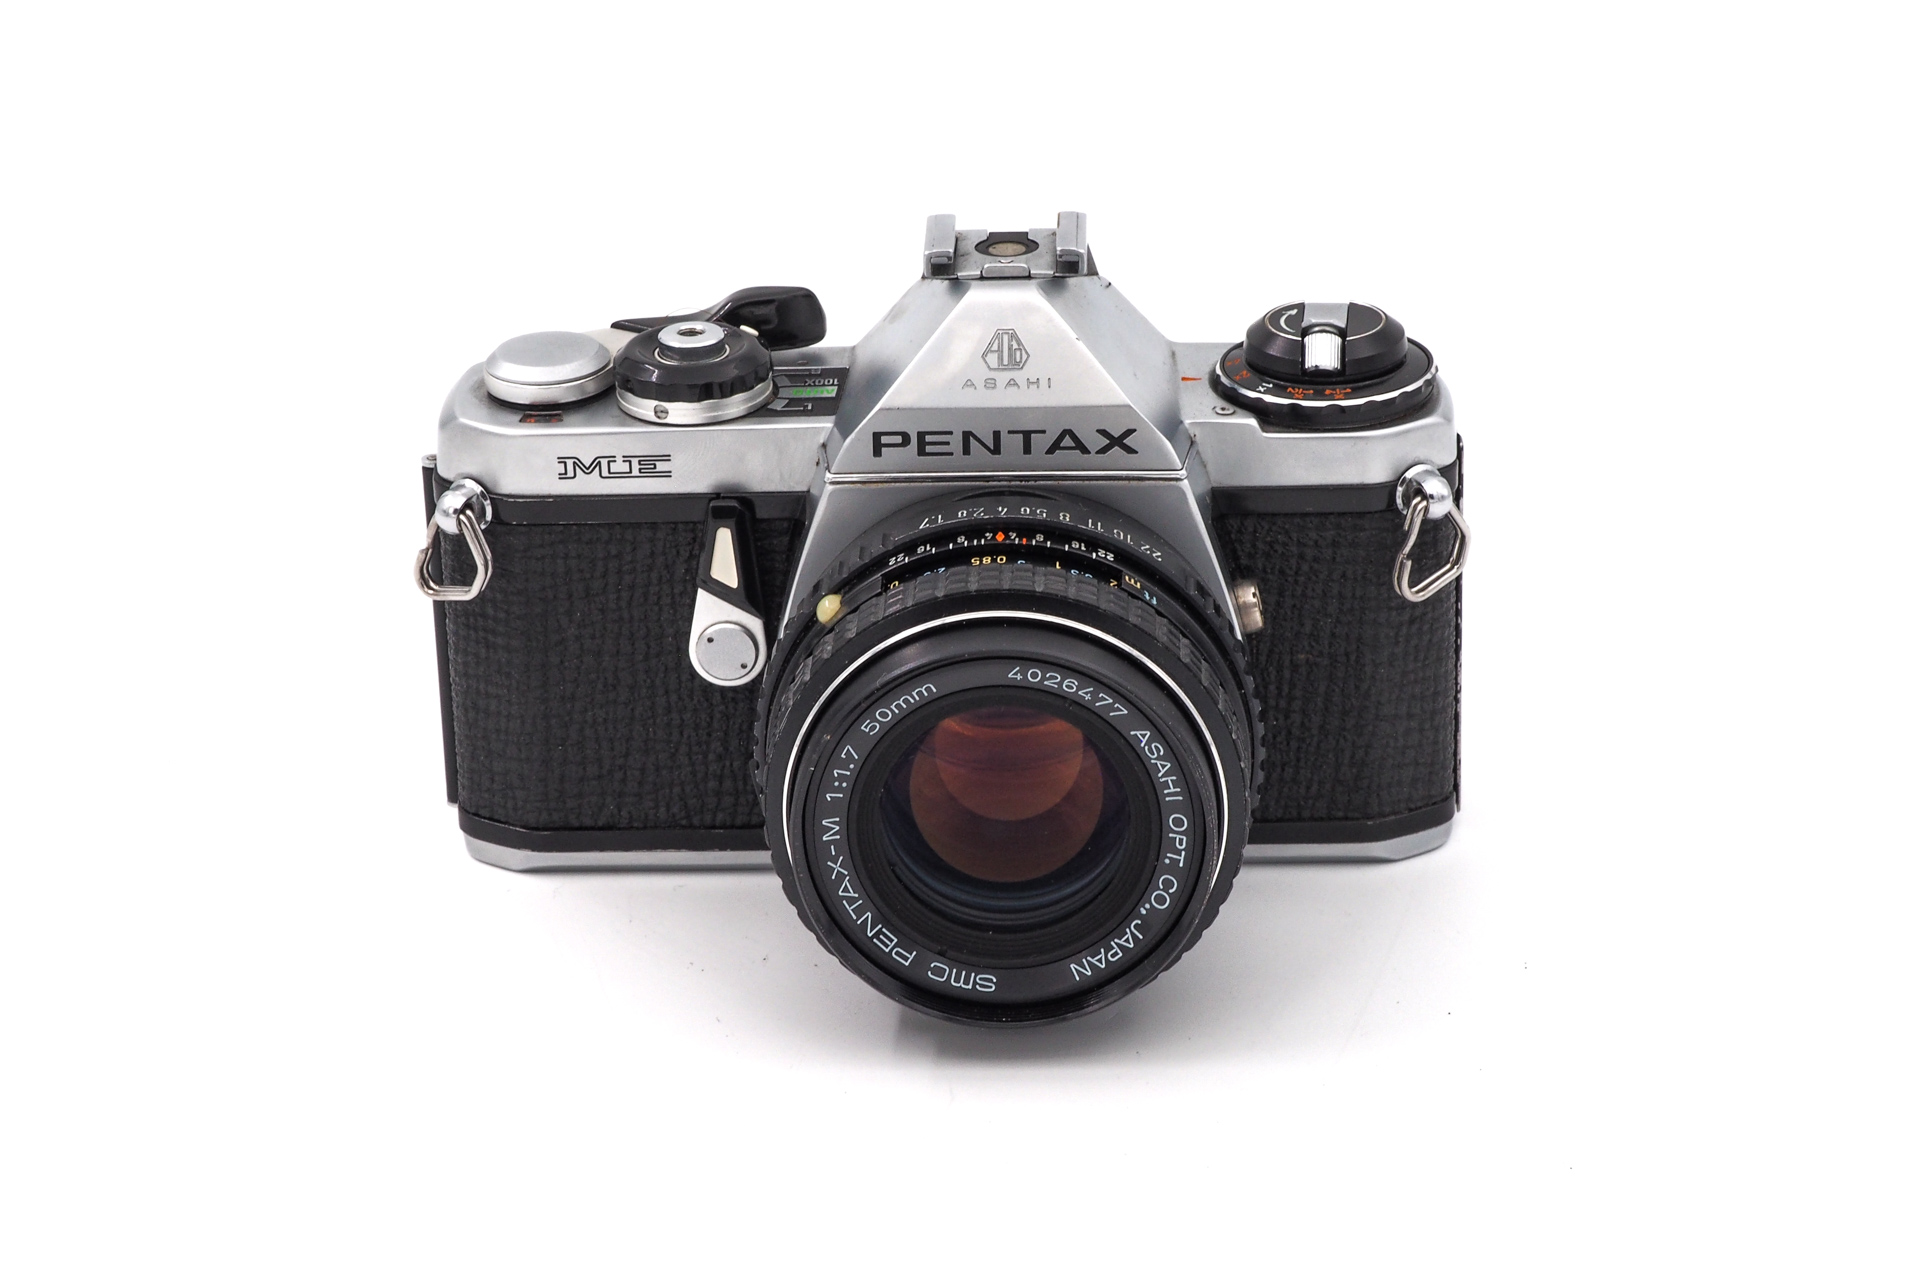 Pentax ME + 50mm F/1.7